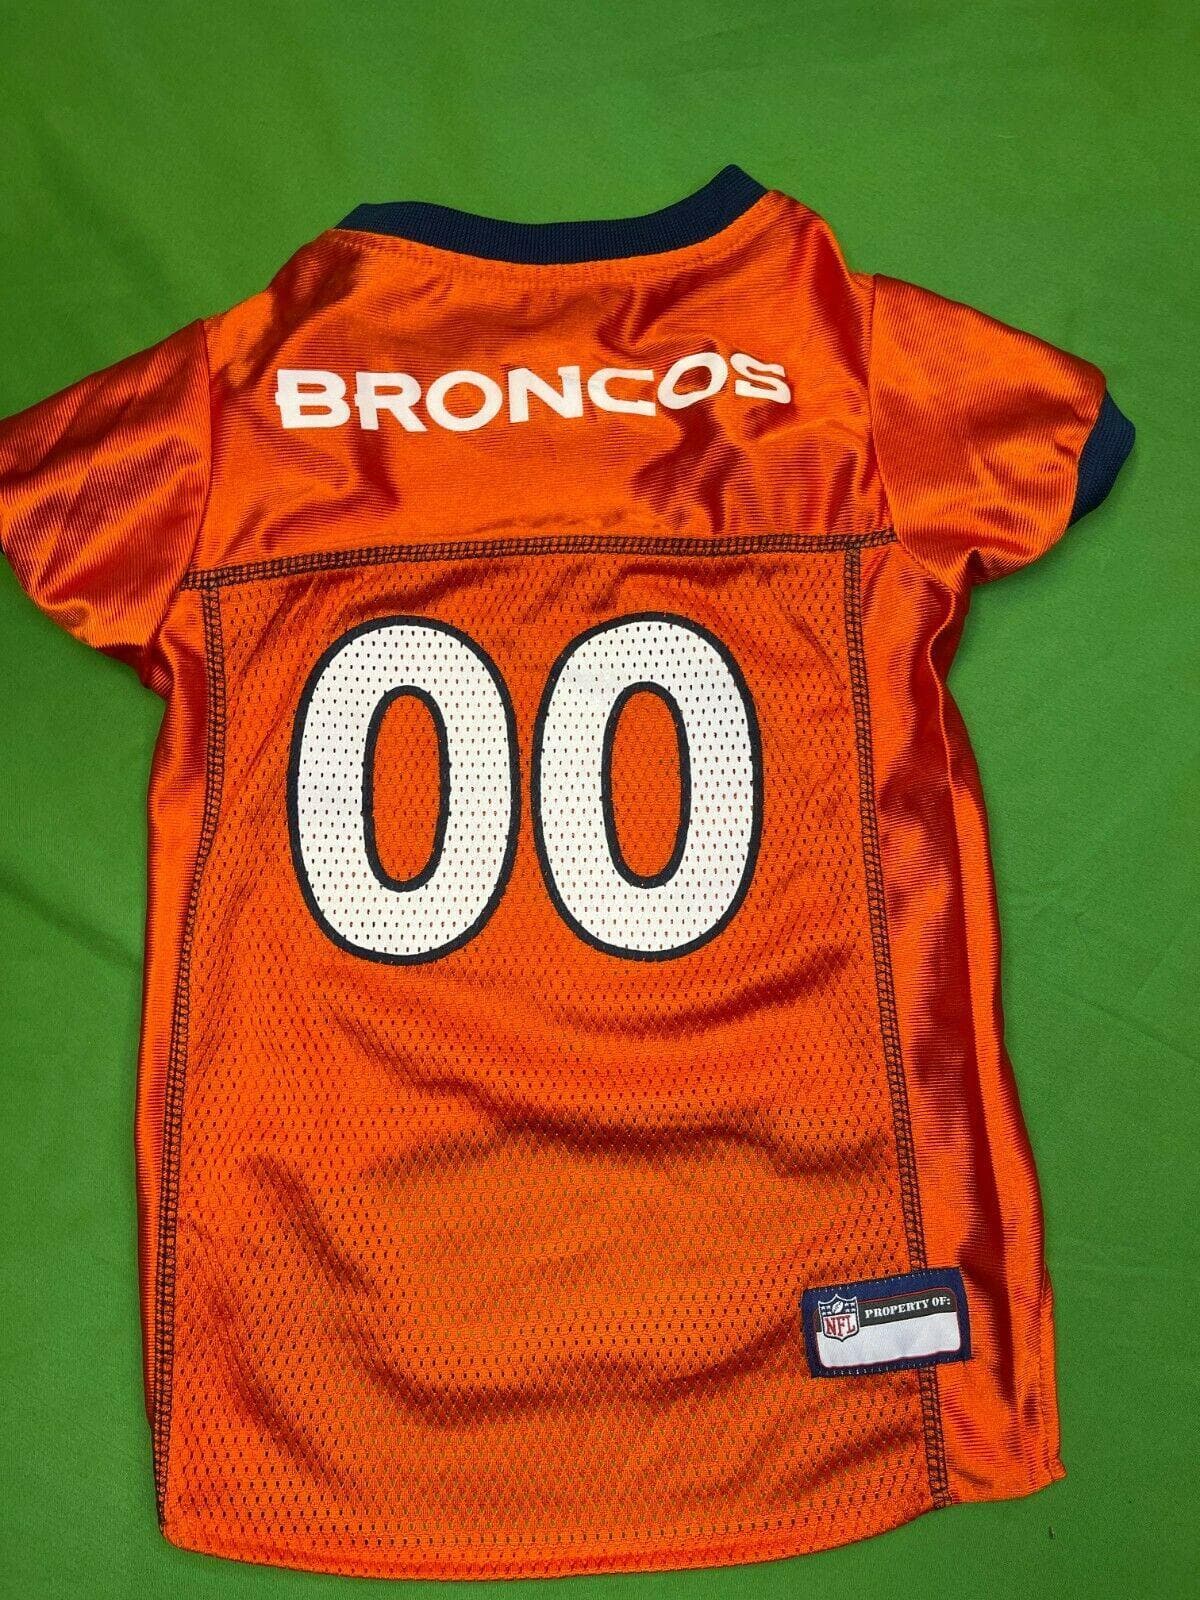 NFL Denver Broncos #00 Dog Jersey Orange Large